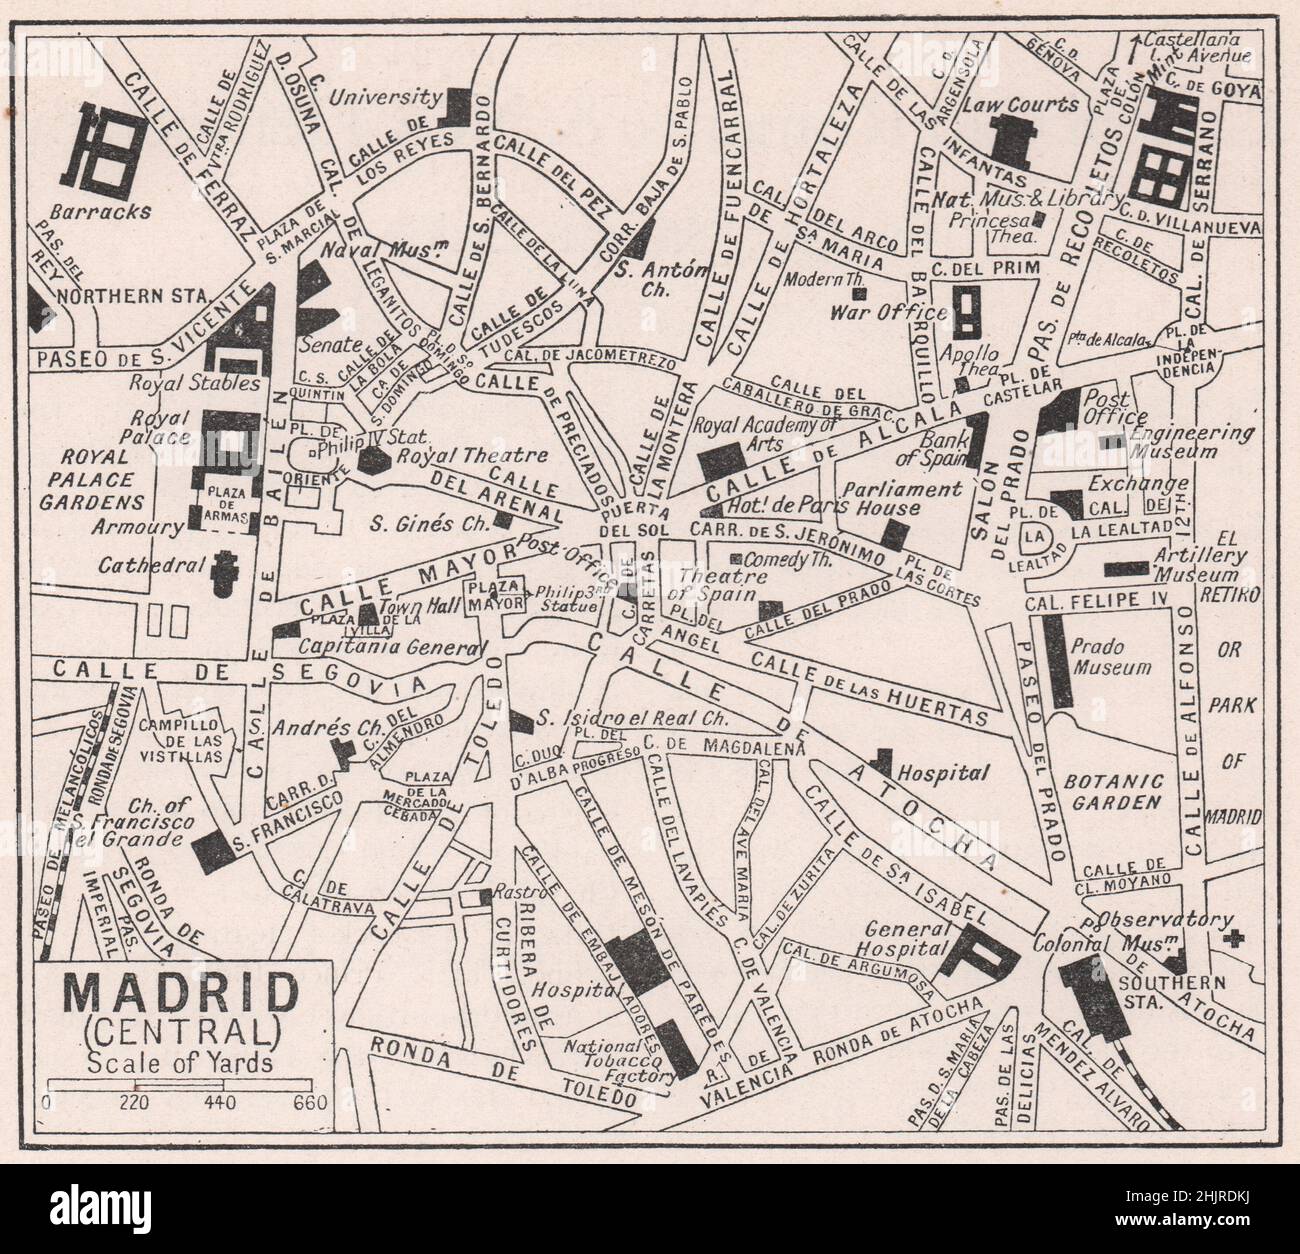 Plätze und Durchgangsstraßen der stattlichen Hauptstadt Spaniens. Madrid (Karte 1923) Stockfoto